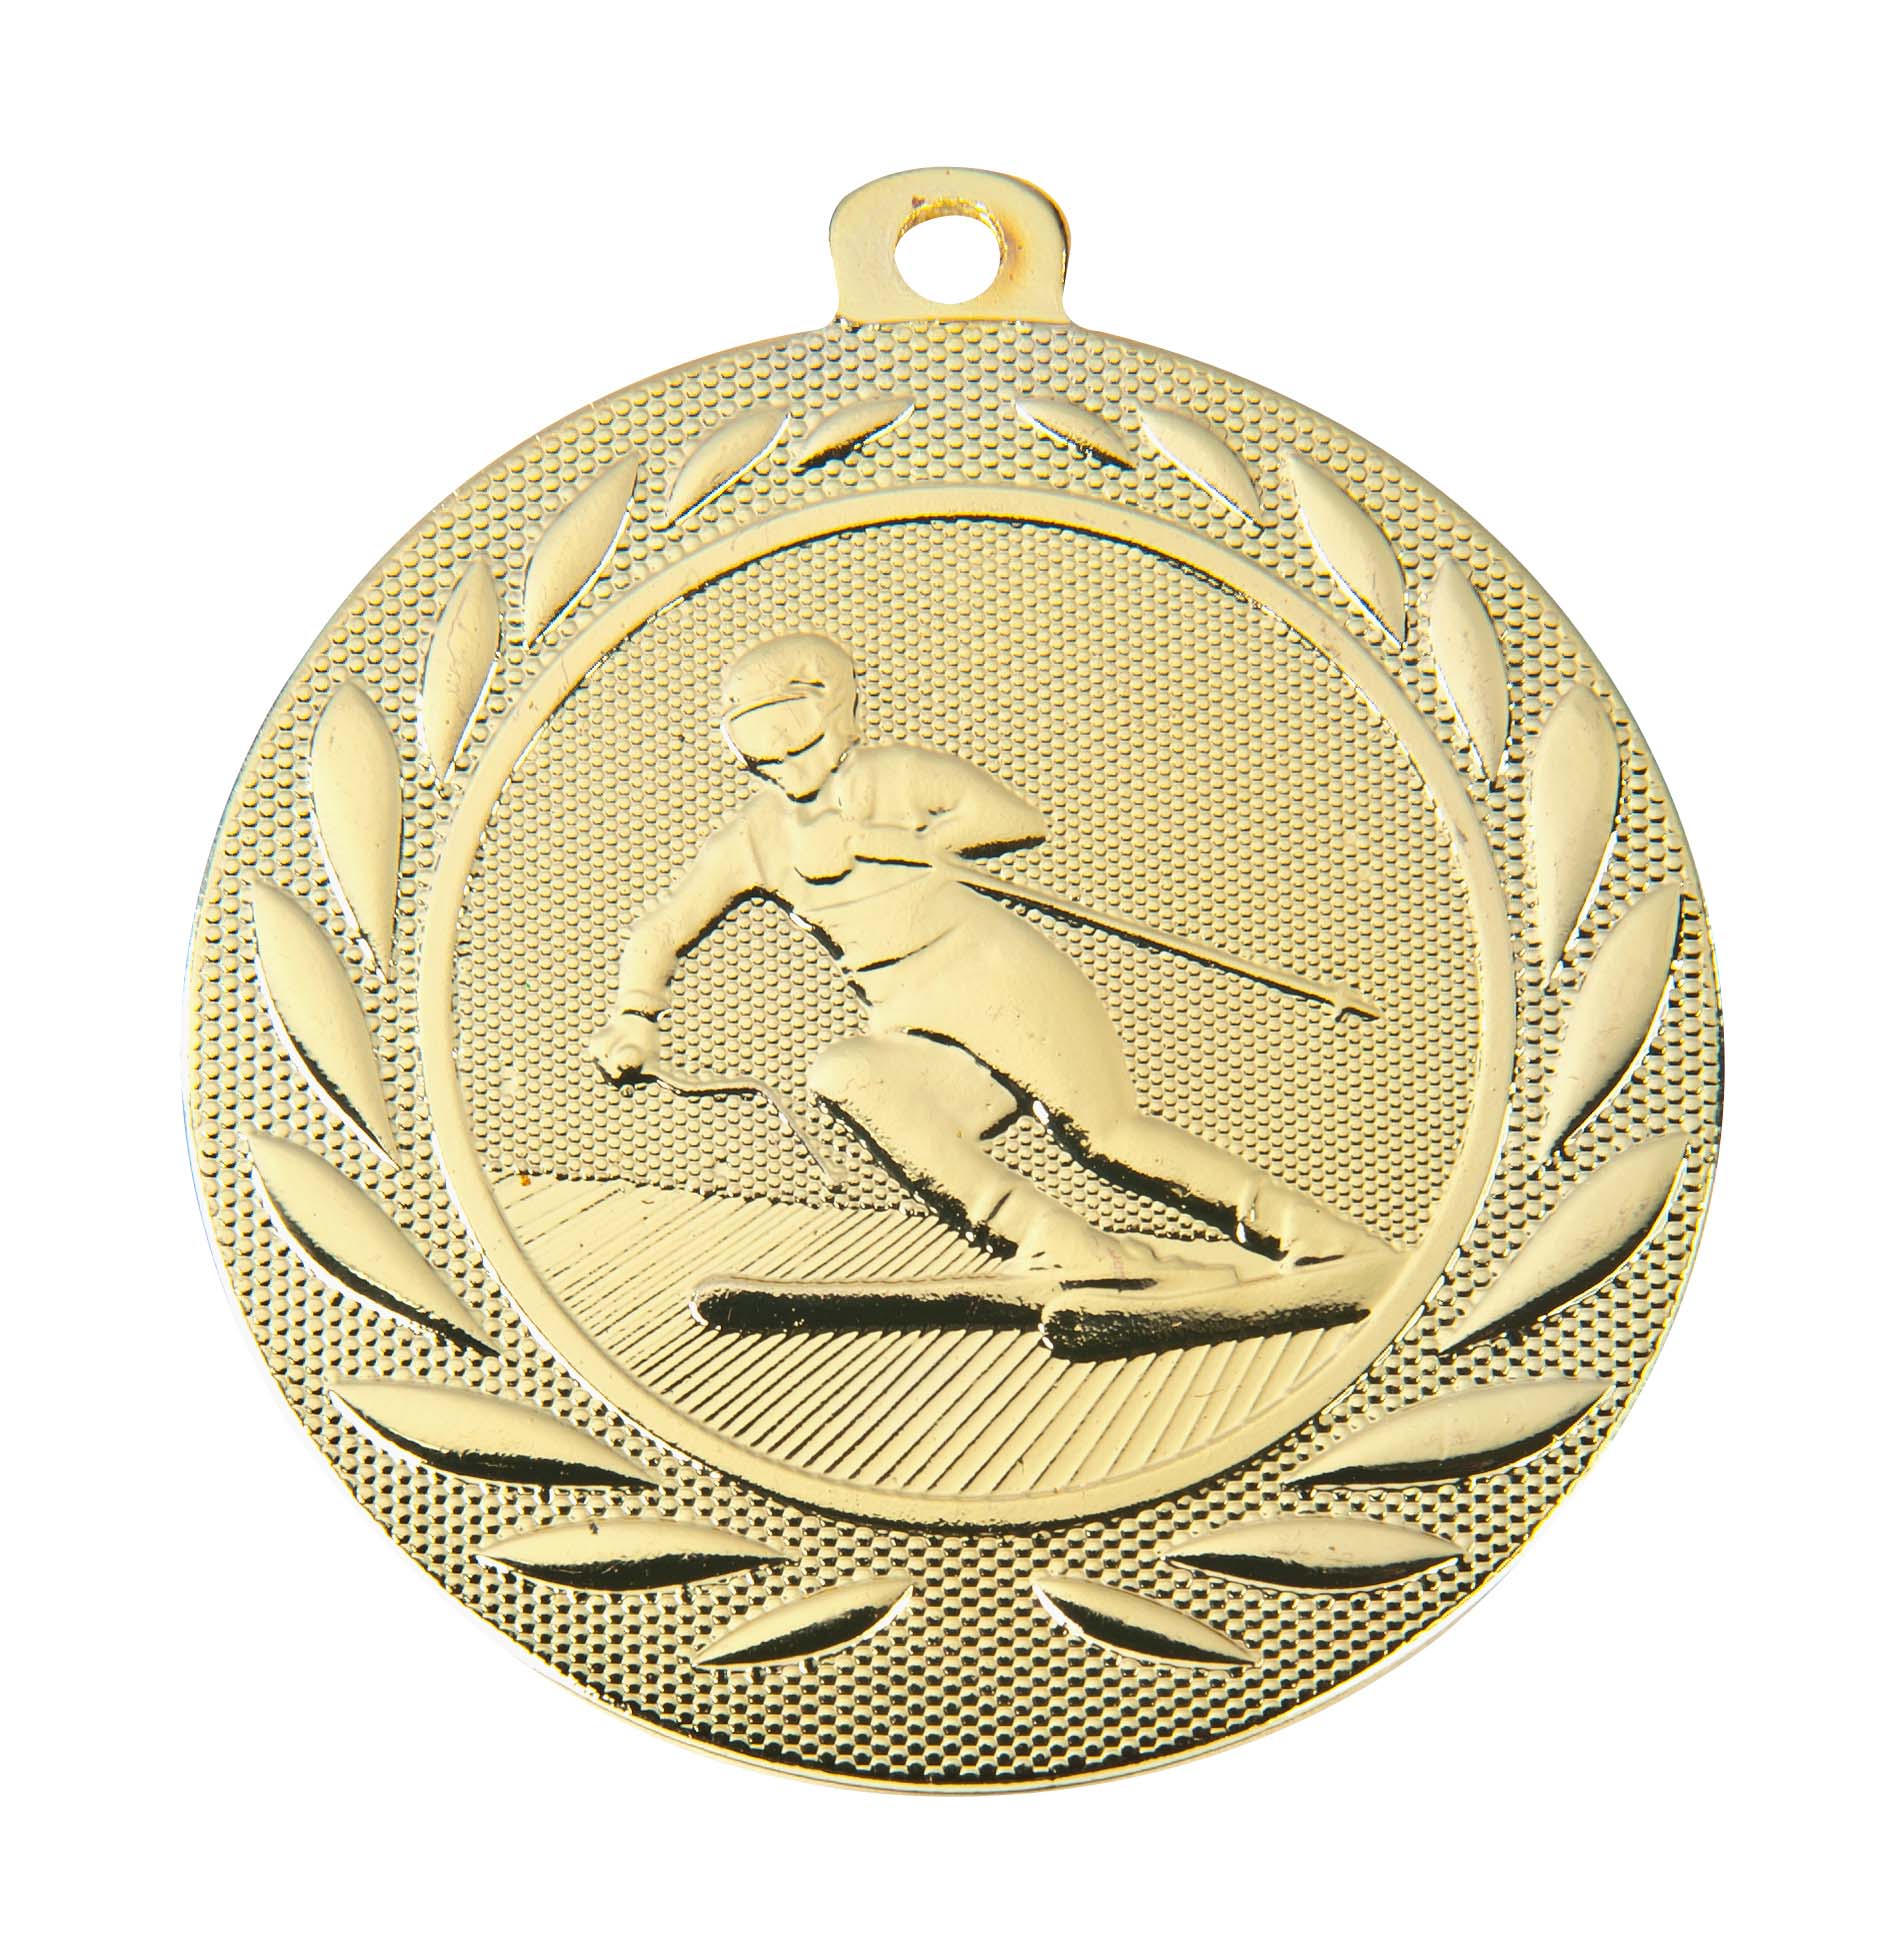 Ski-Medaille DI15000Q inkl. Band und Beschriftung Gold Fertig montiert gegen Aufpreis